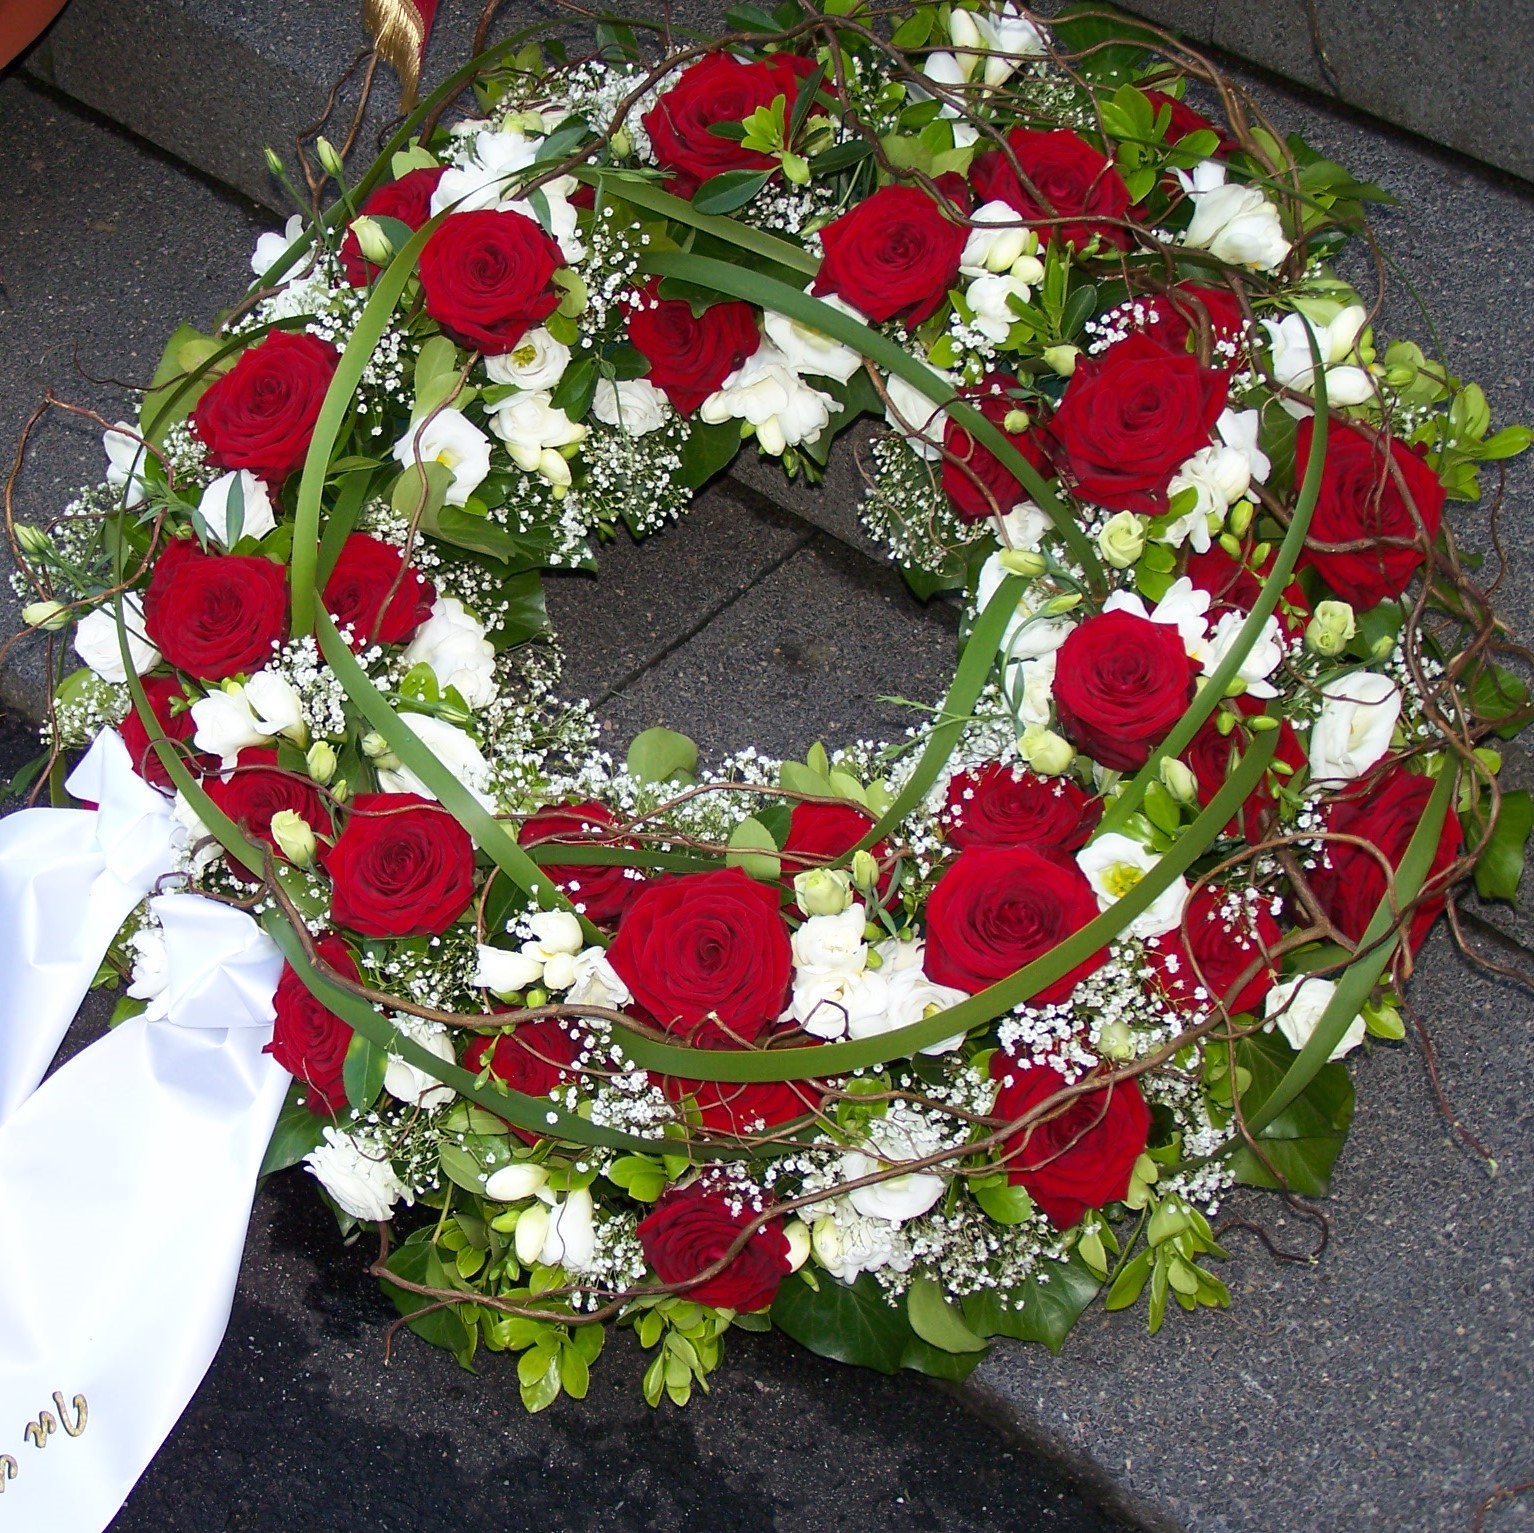 Trauerkranz rundgesteckt mit roten Rosen,weißen Blumen und Grün Bild 1